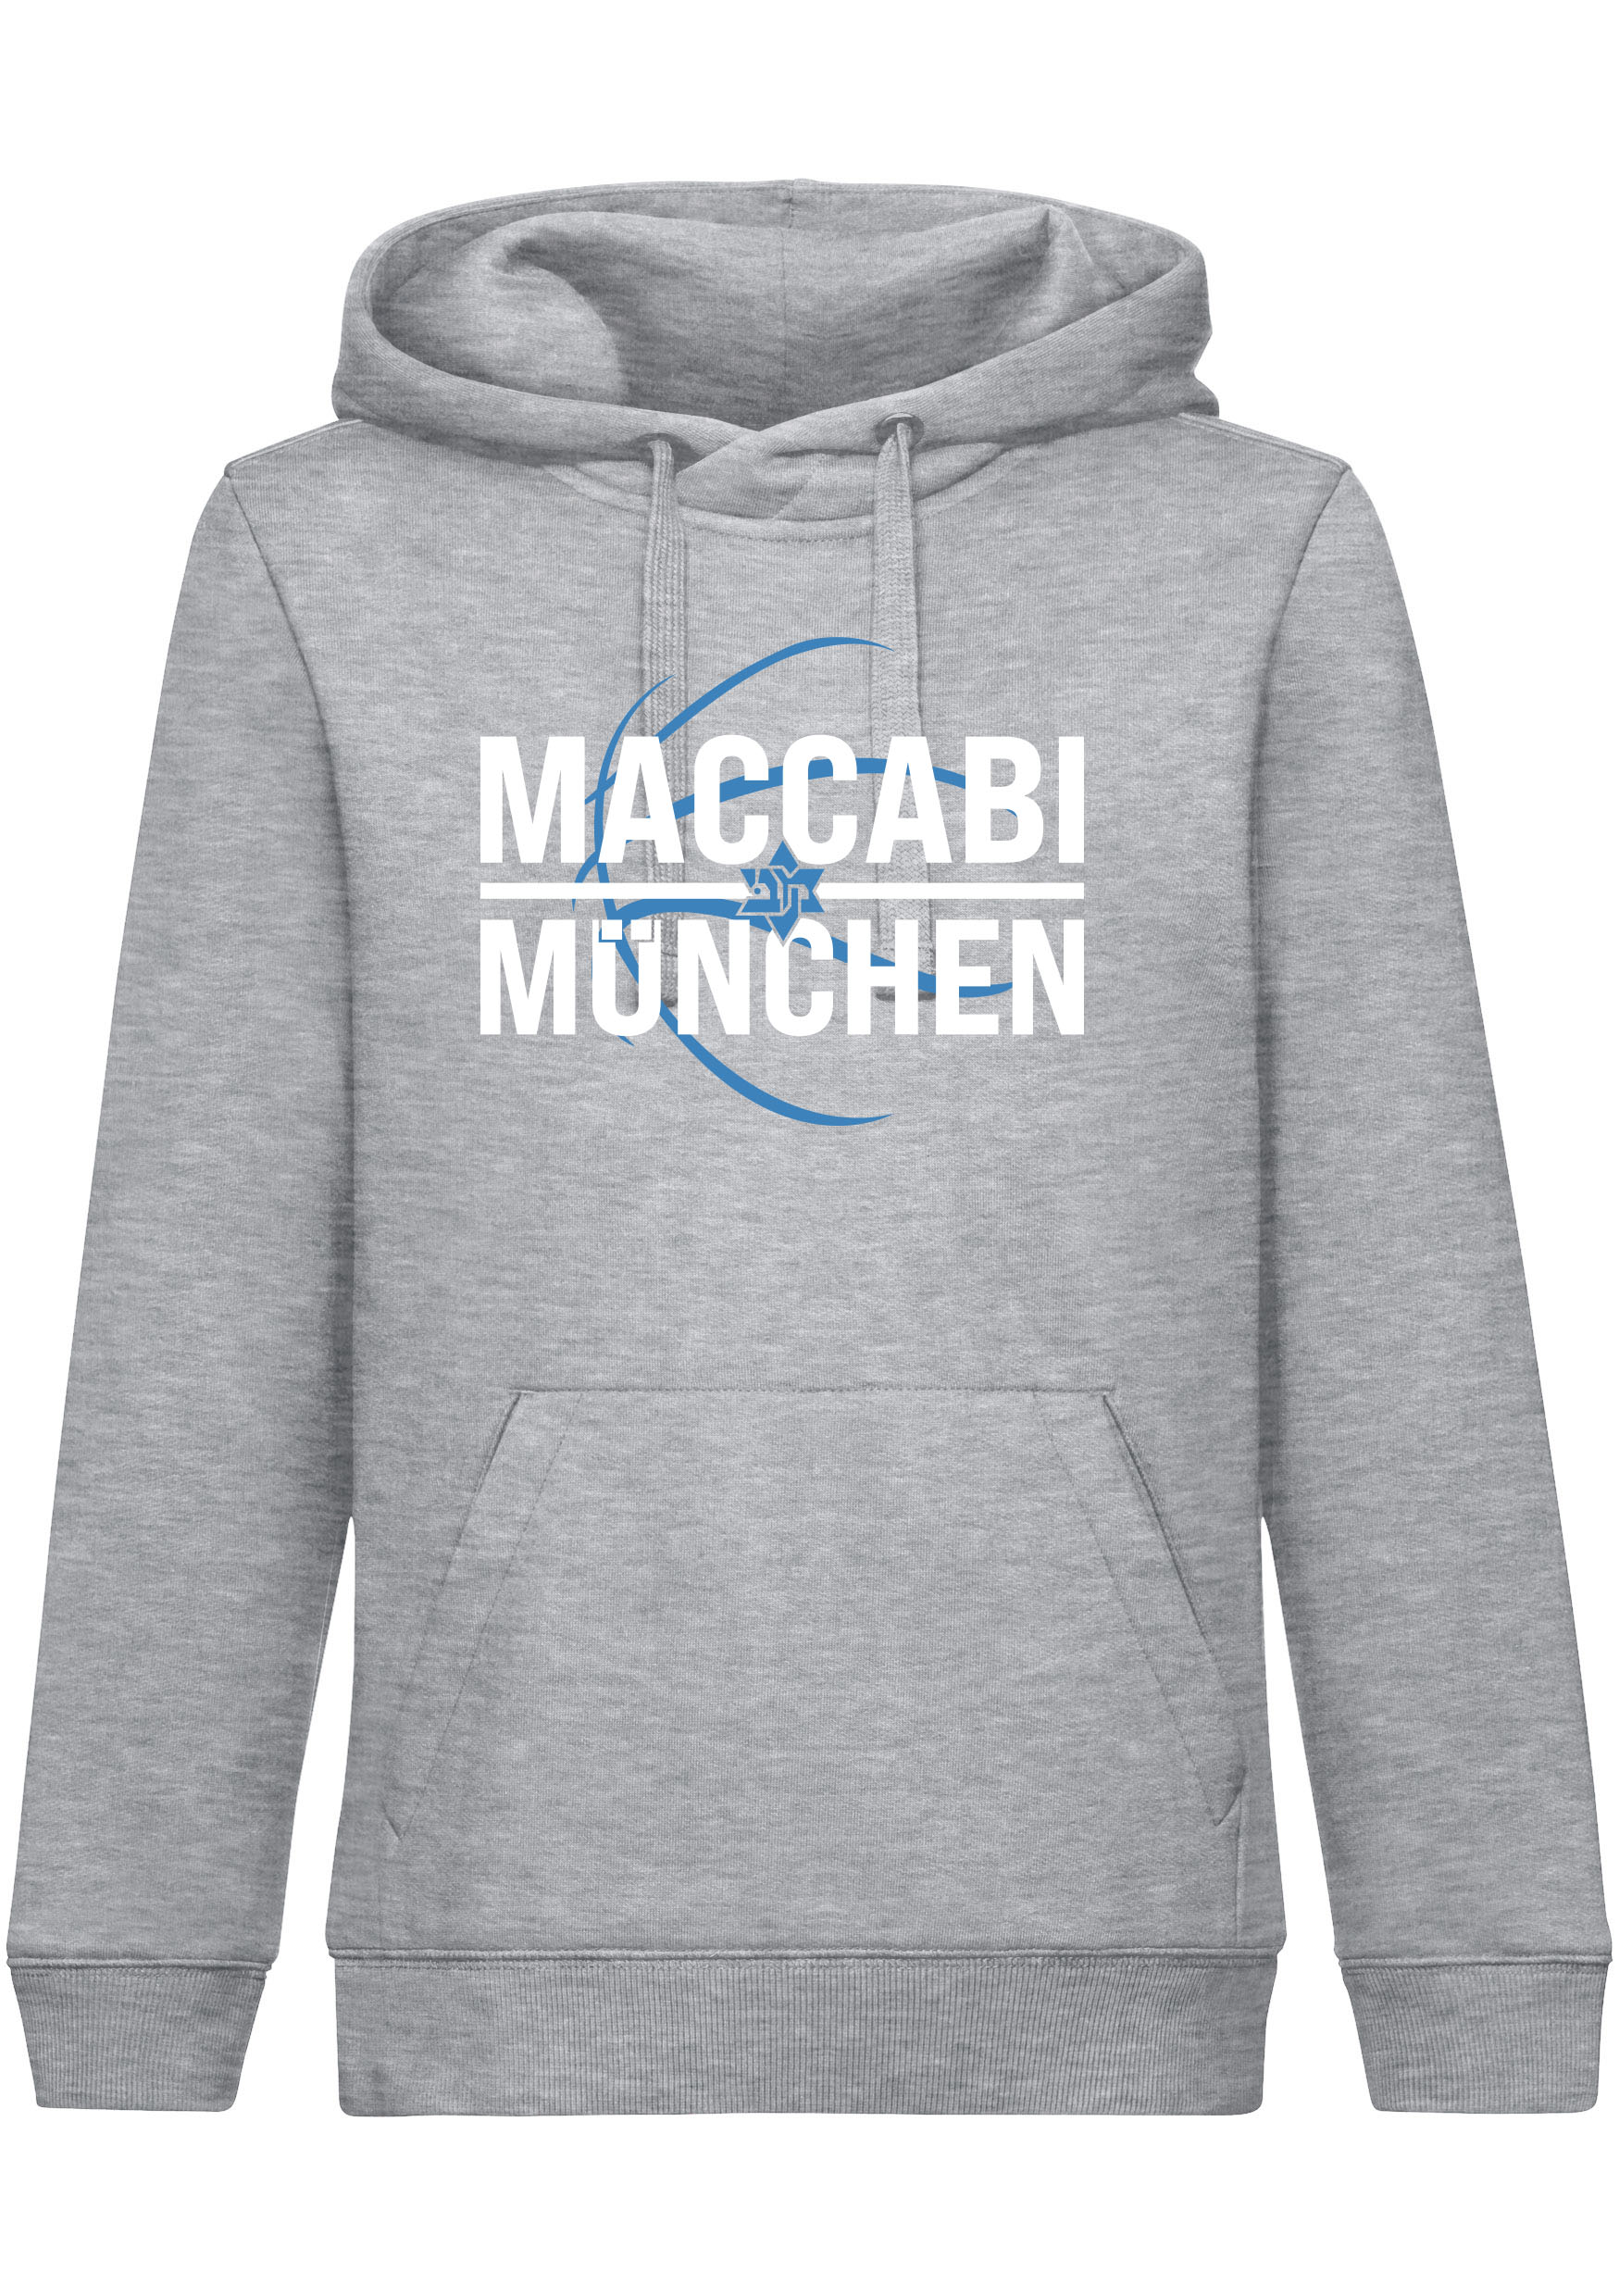 Maccabi München Hoodie grau